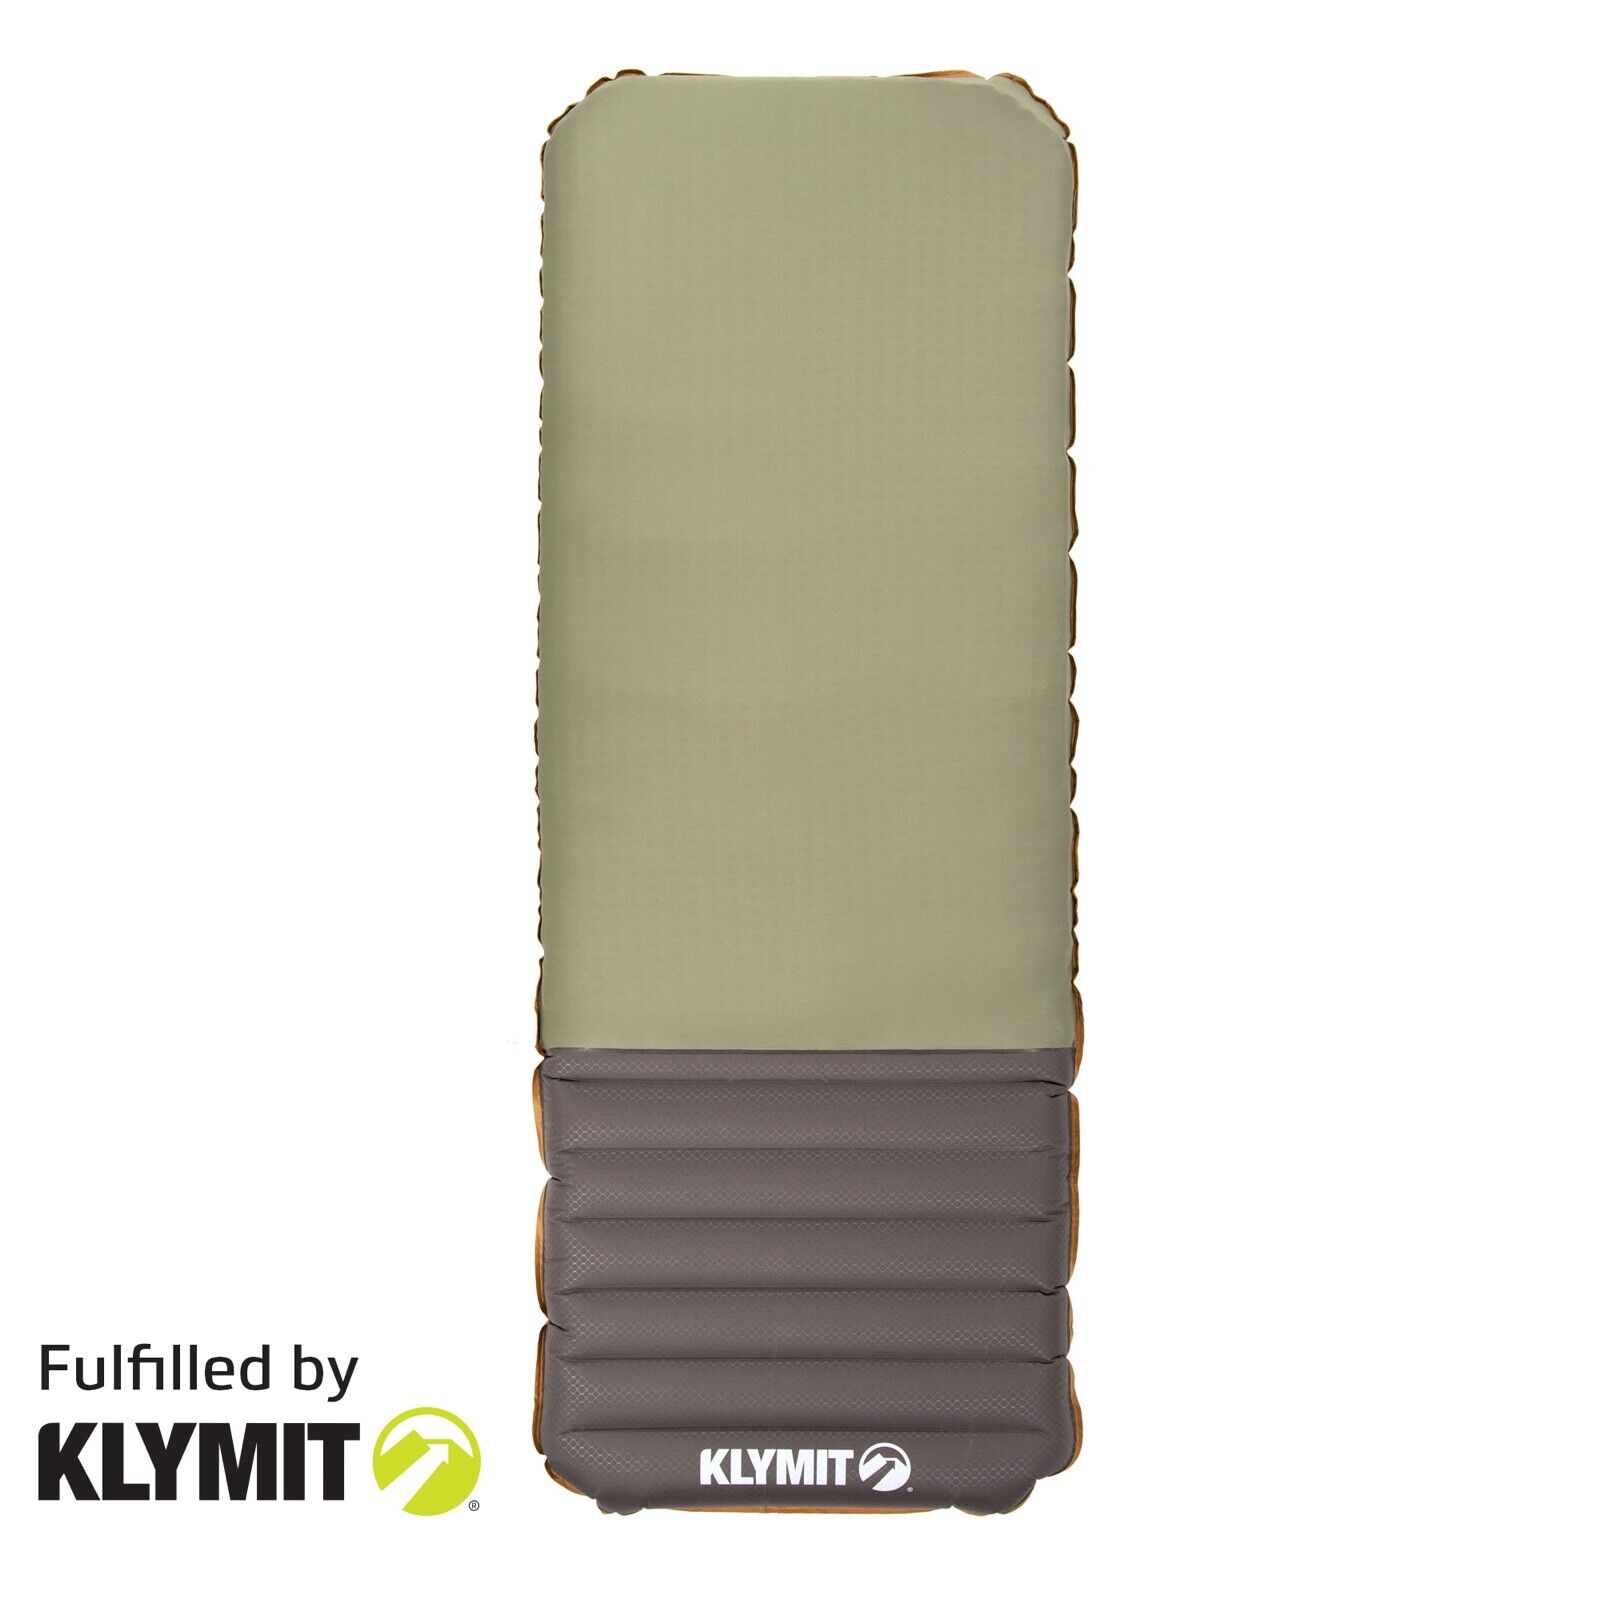 Klymit Klymaloft XL Camping Sleeping Pad - Certified Refurbished